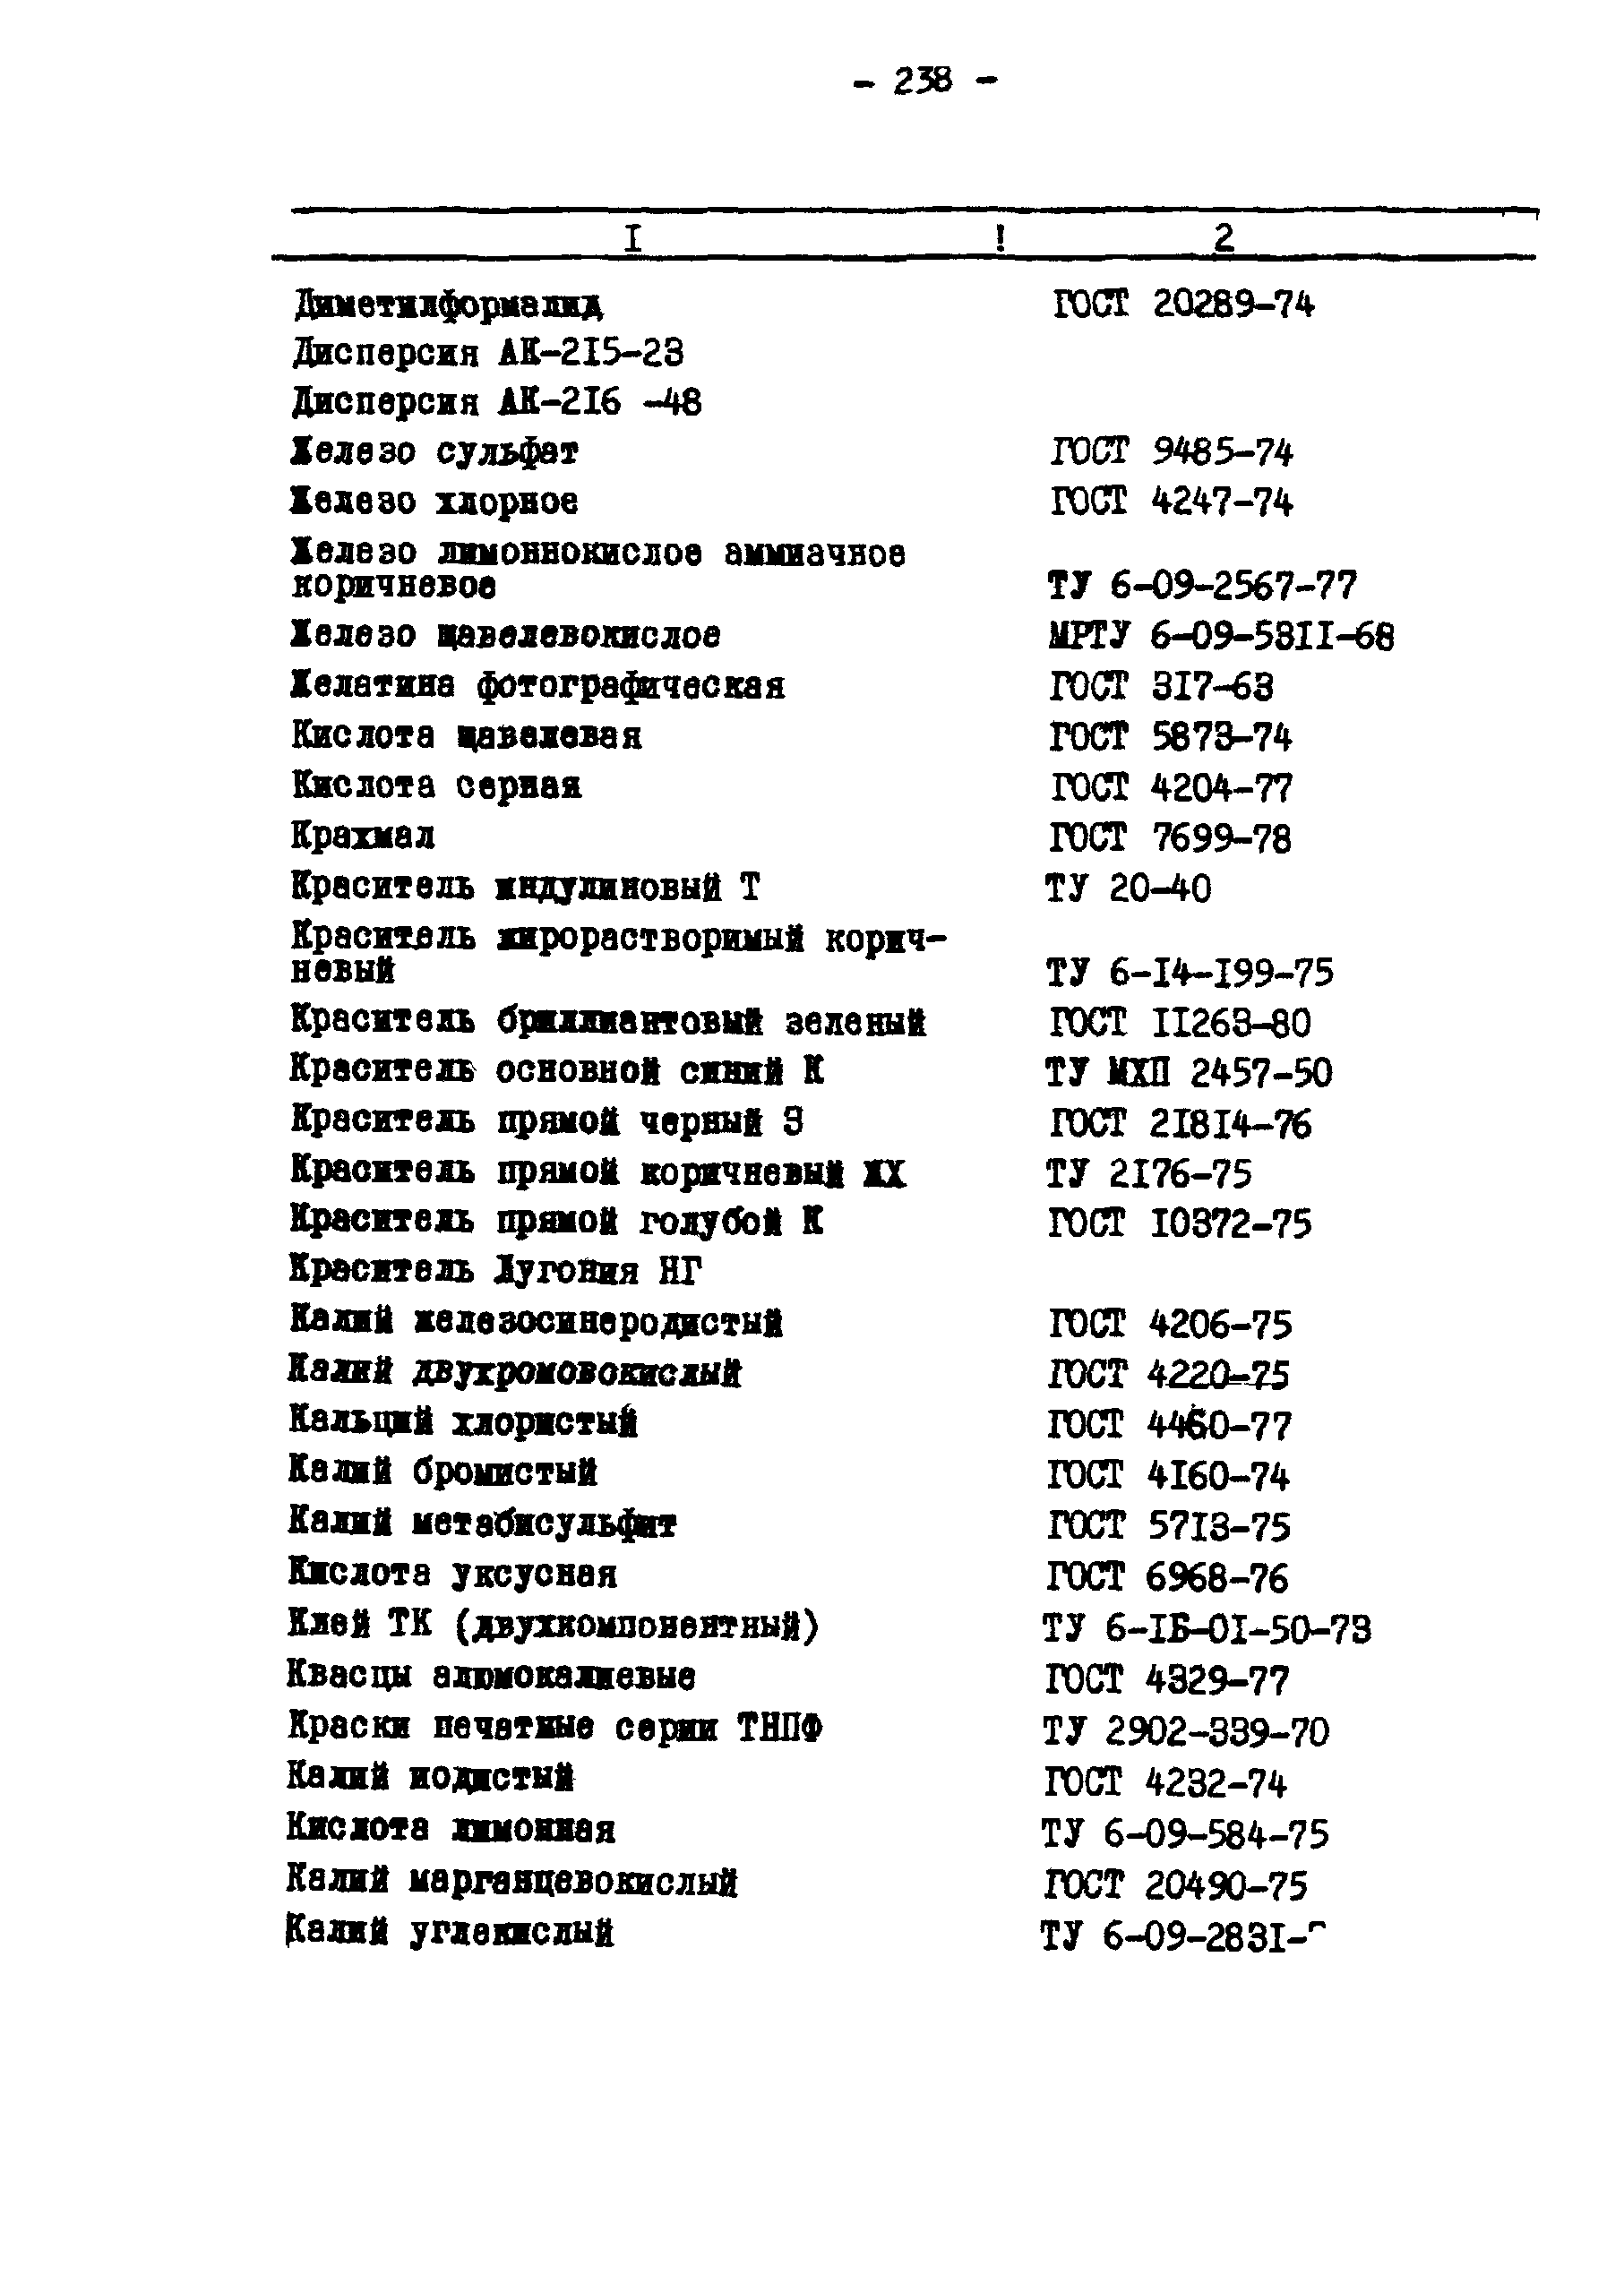 ГКИНП 02-190-85